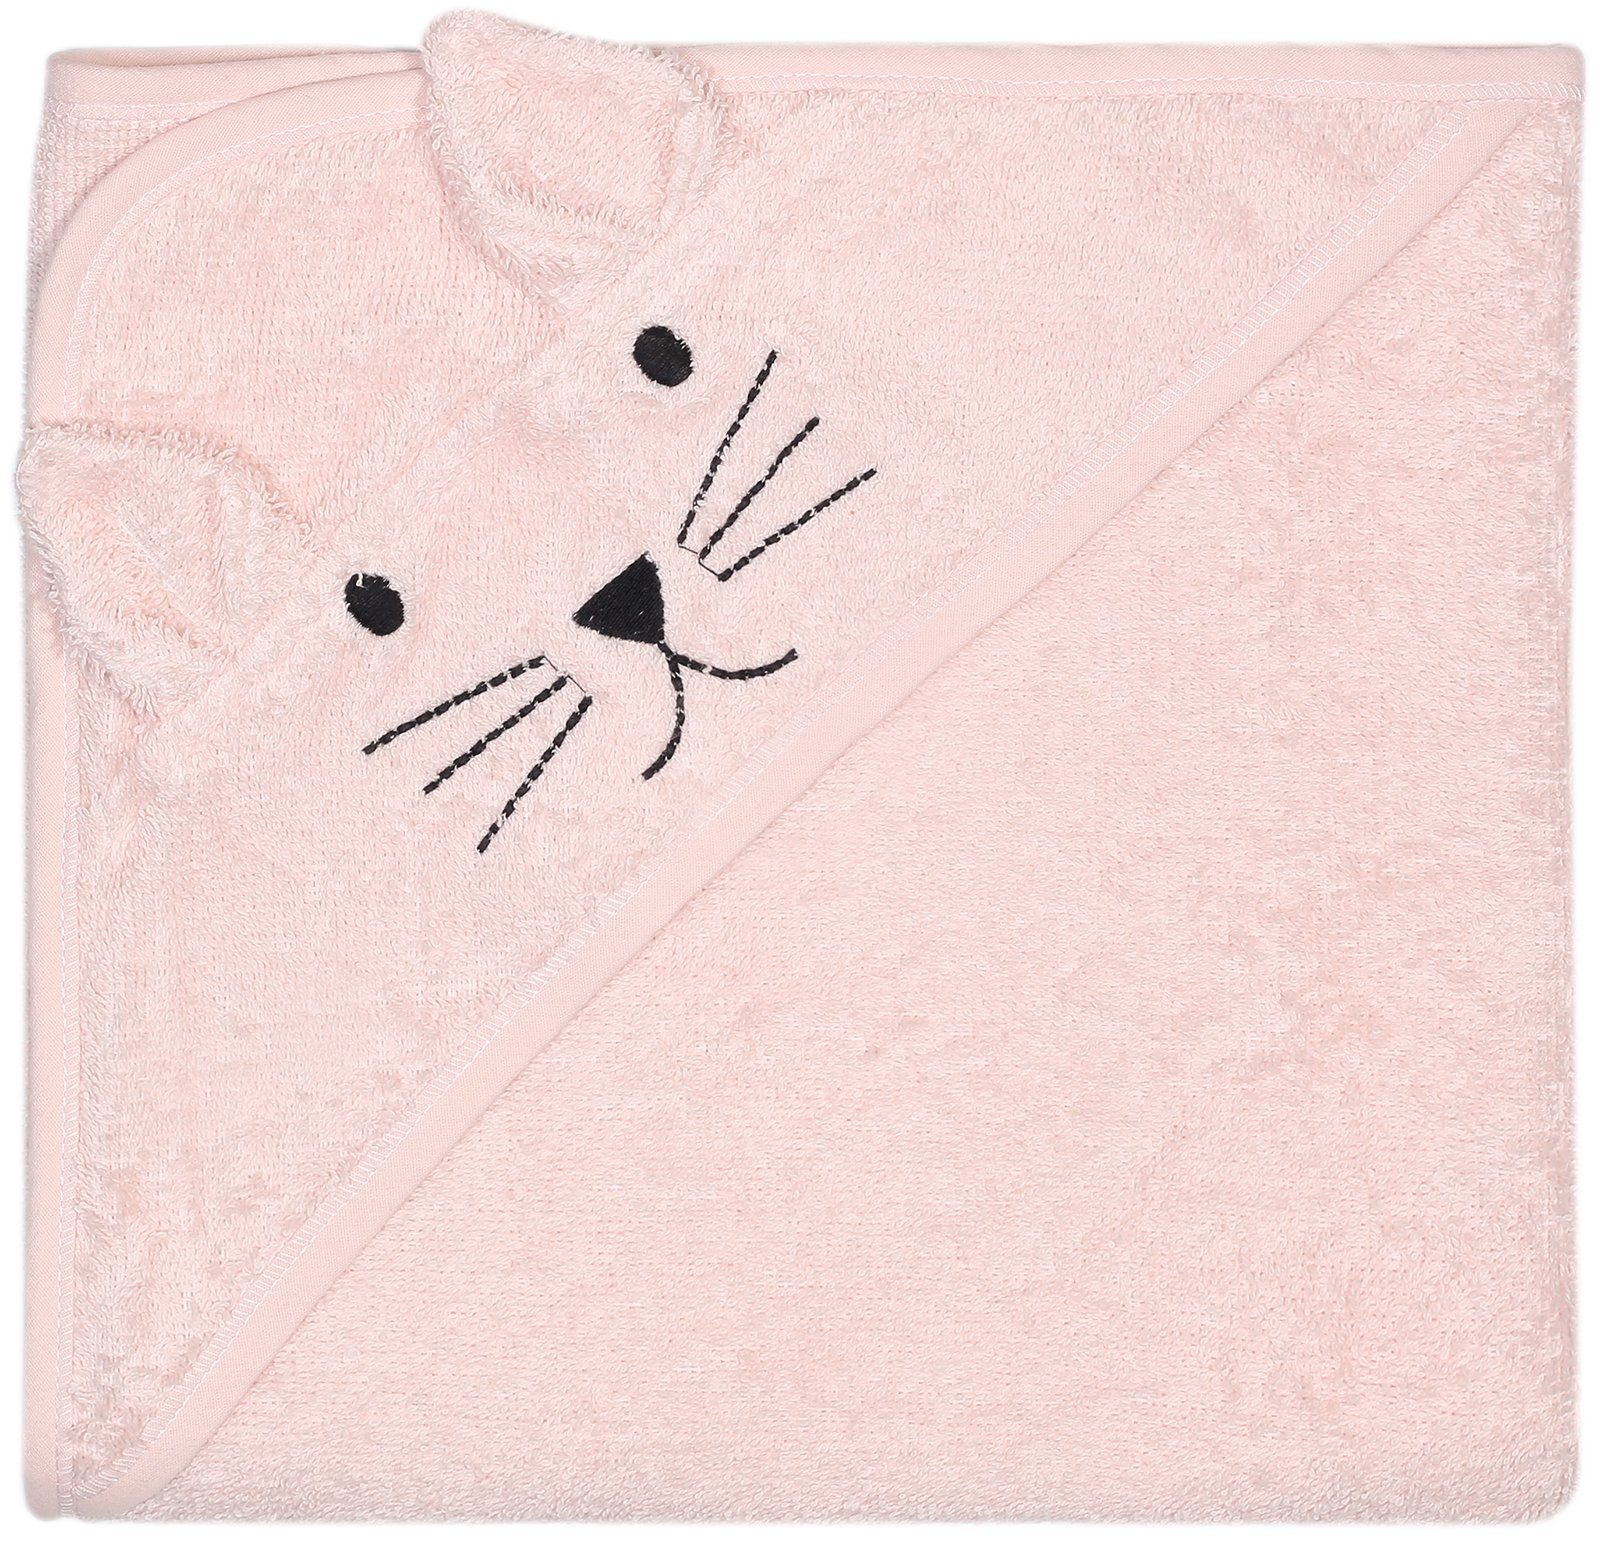 Aus Katze, Kapuzenhandtuch Baumwolle, KINDSGUT Baumwolle rosa zertifizierter 100%